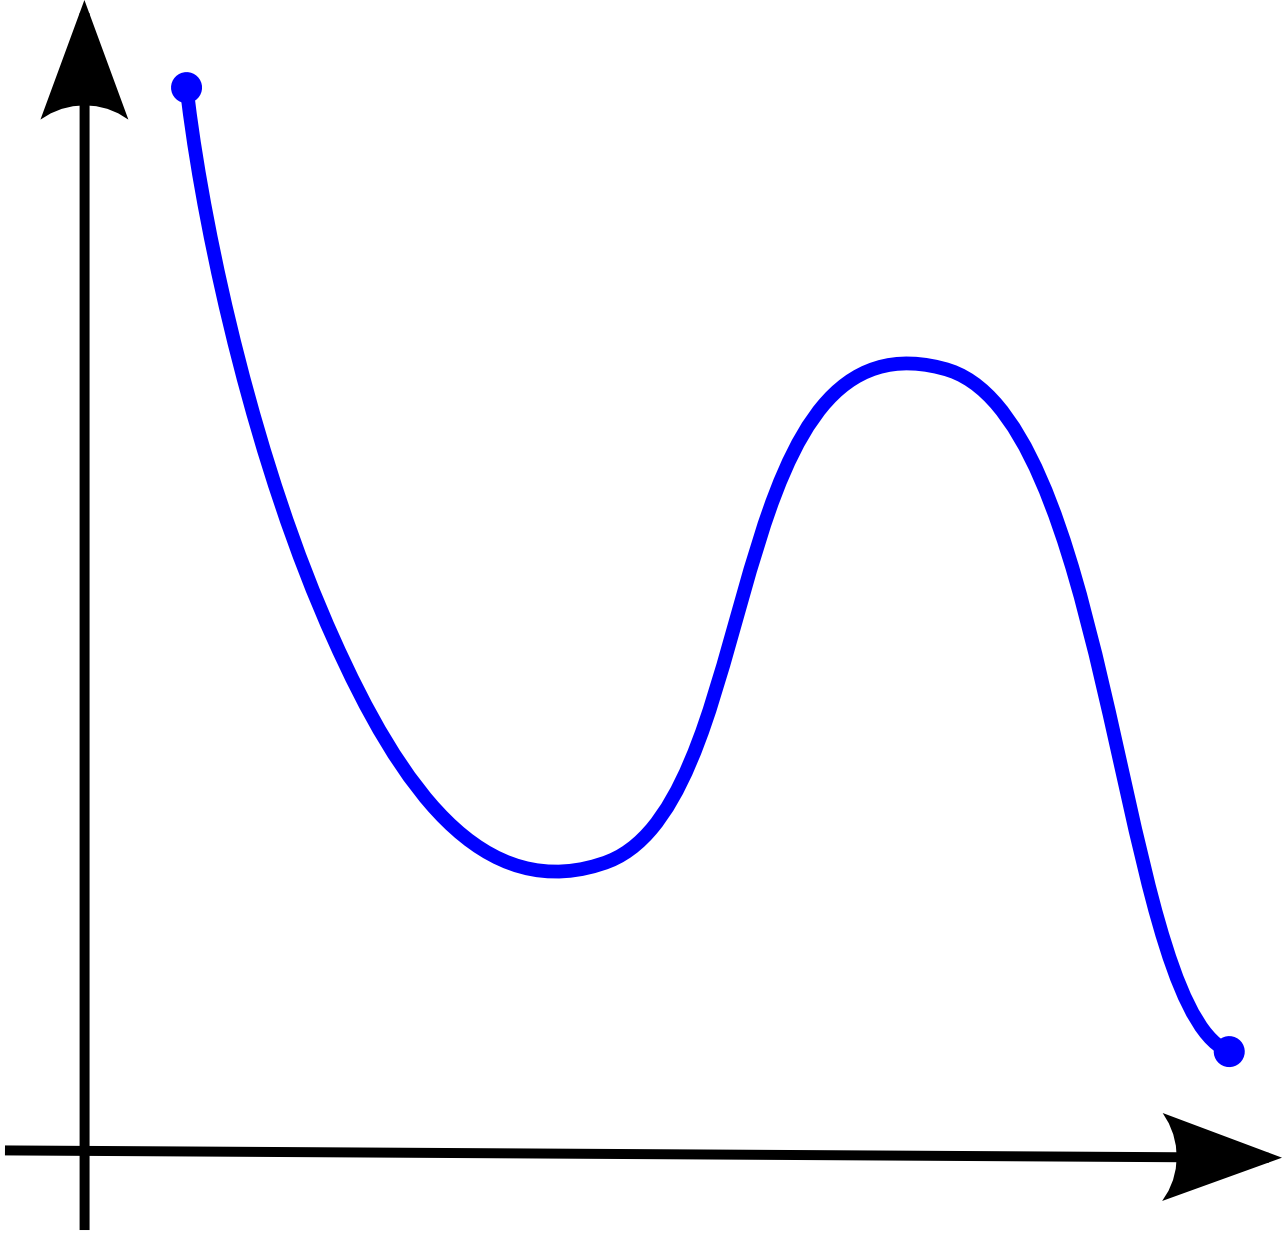 Функции png. Монотонные функции рисунок. Функции на прозрачном фоне. Немонотонный график. Монотонная кривая.